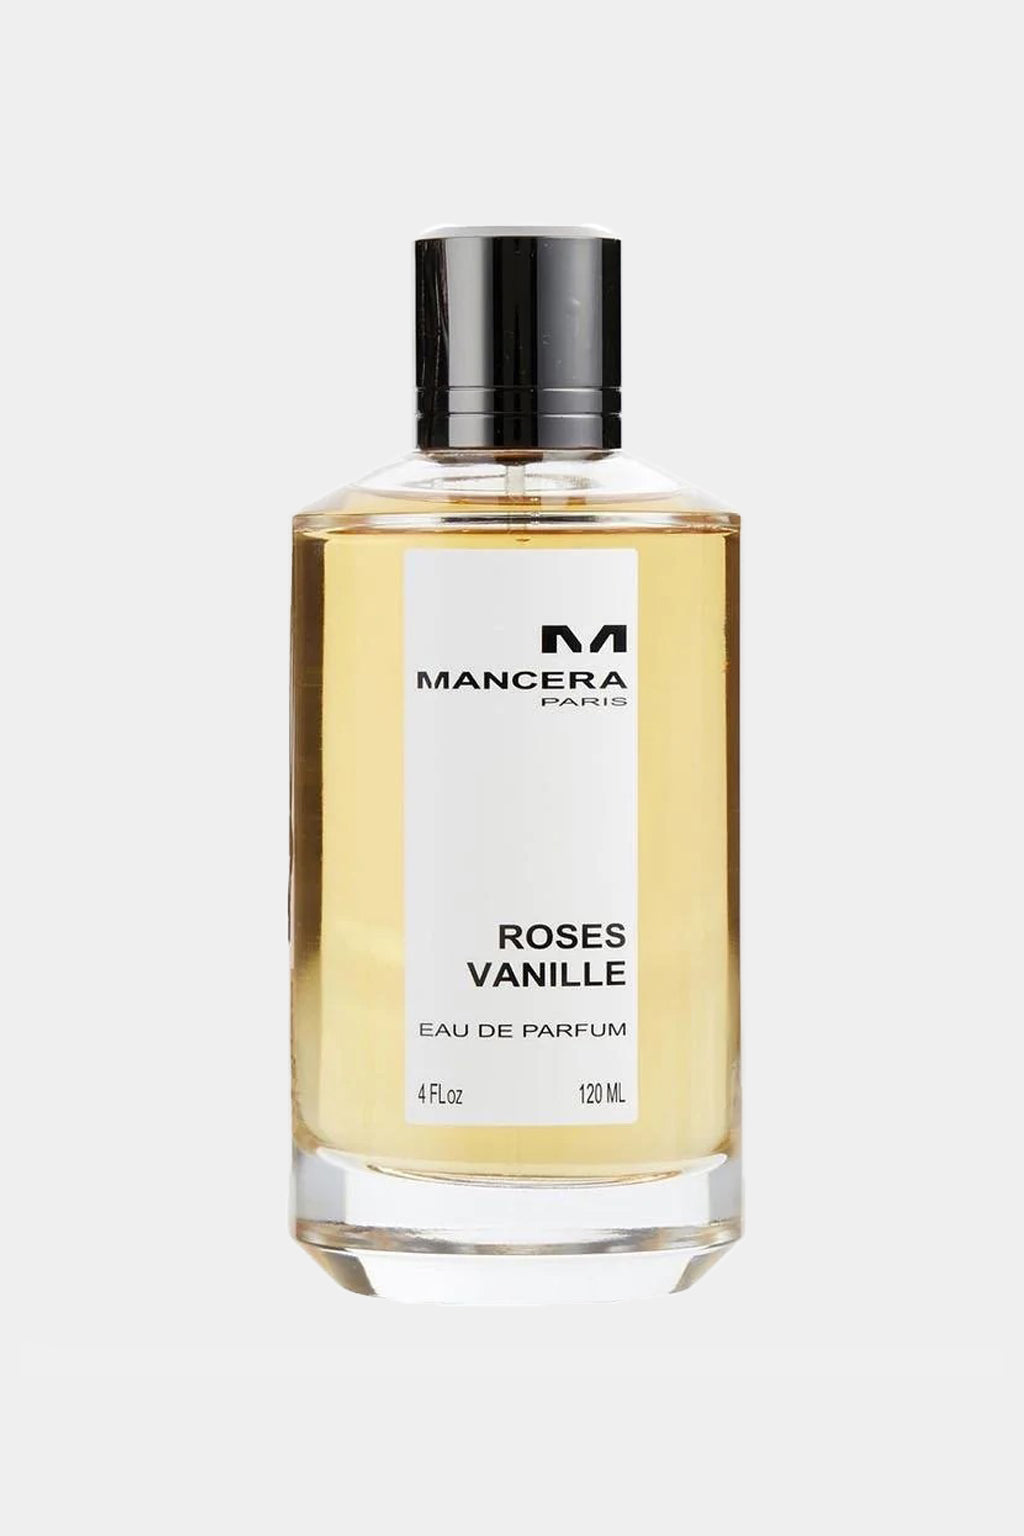 Mancera - Roses Vanille Eau de Parfum